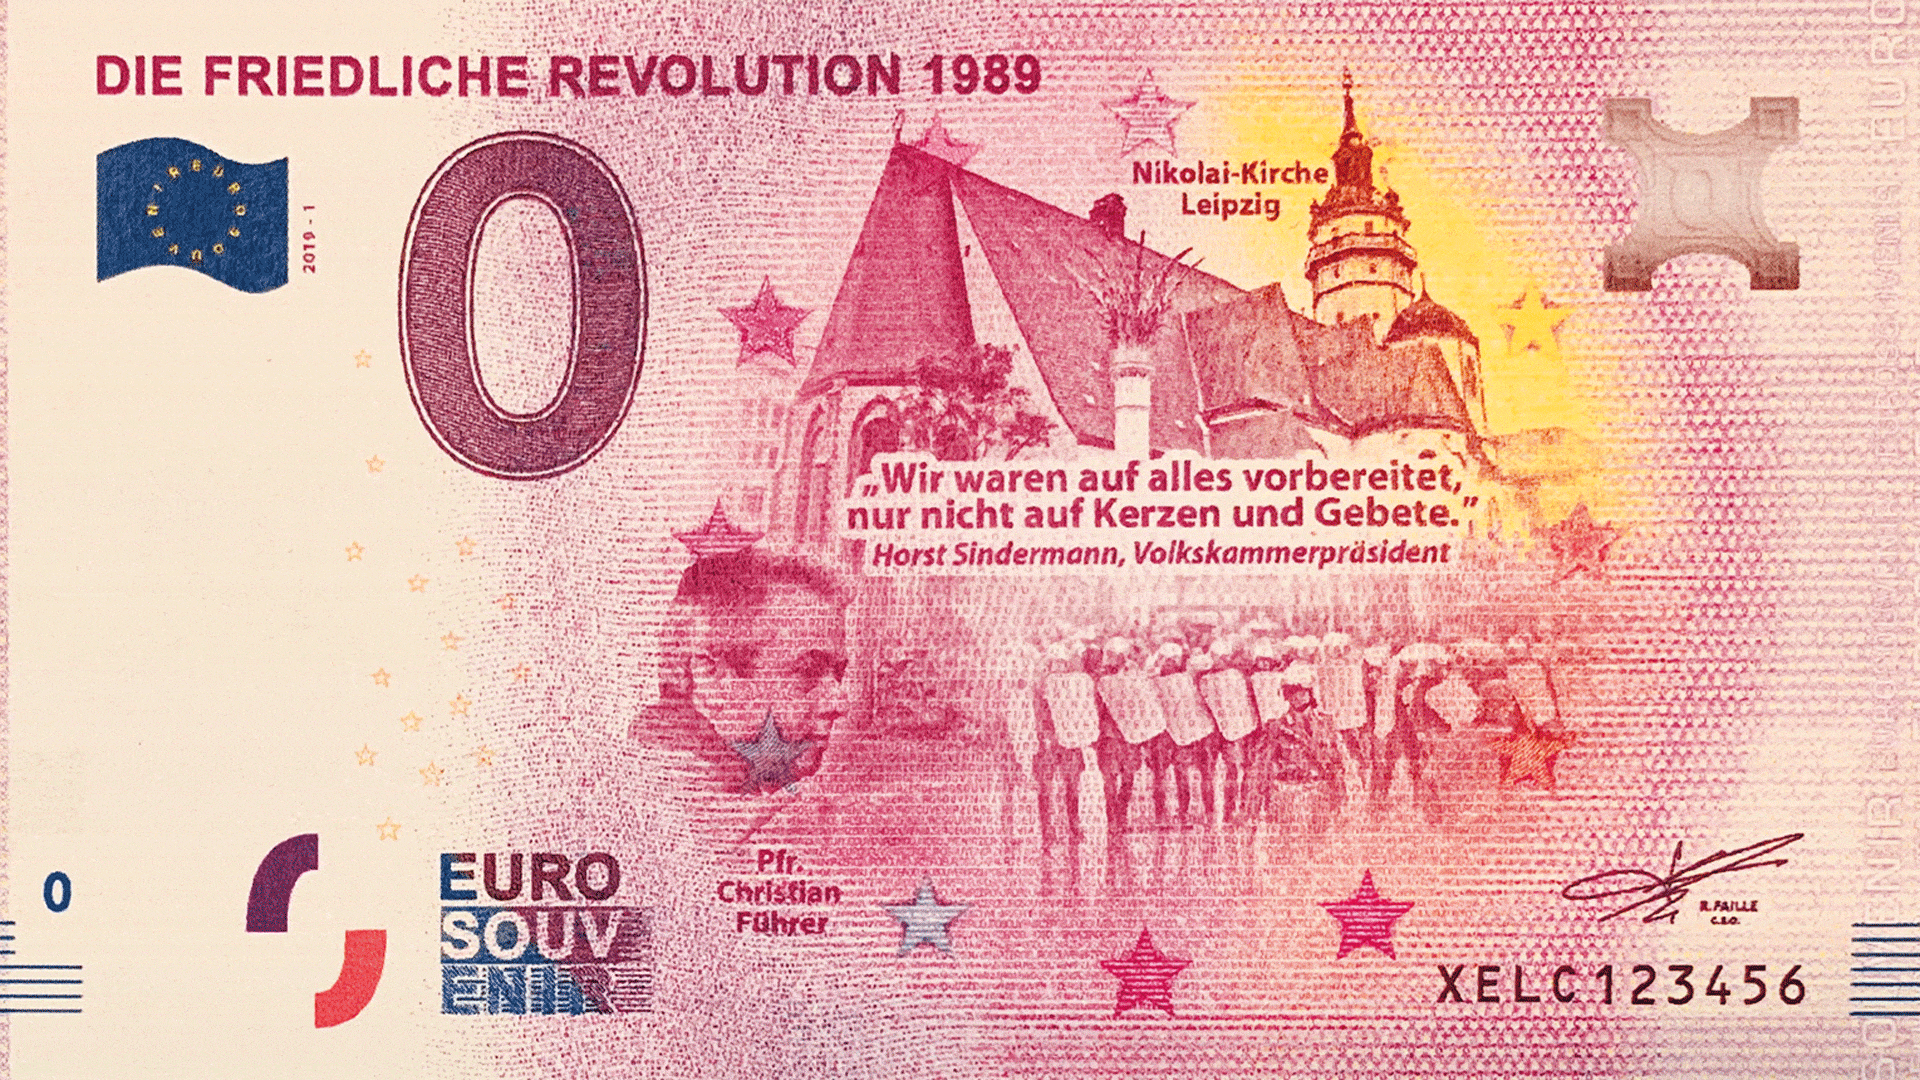 Die neueste Version der 0-Euro-Scheine erinnert an die friedliche Revolution 1989